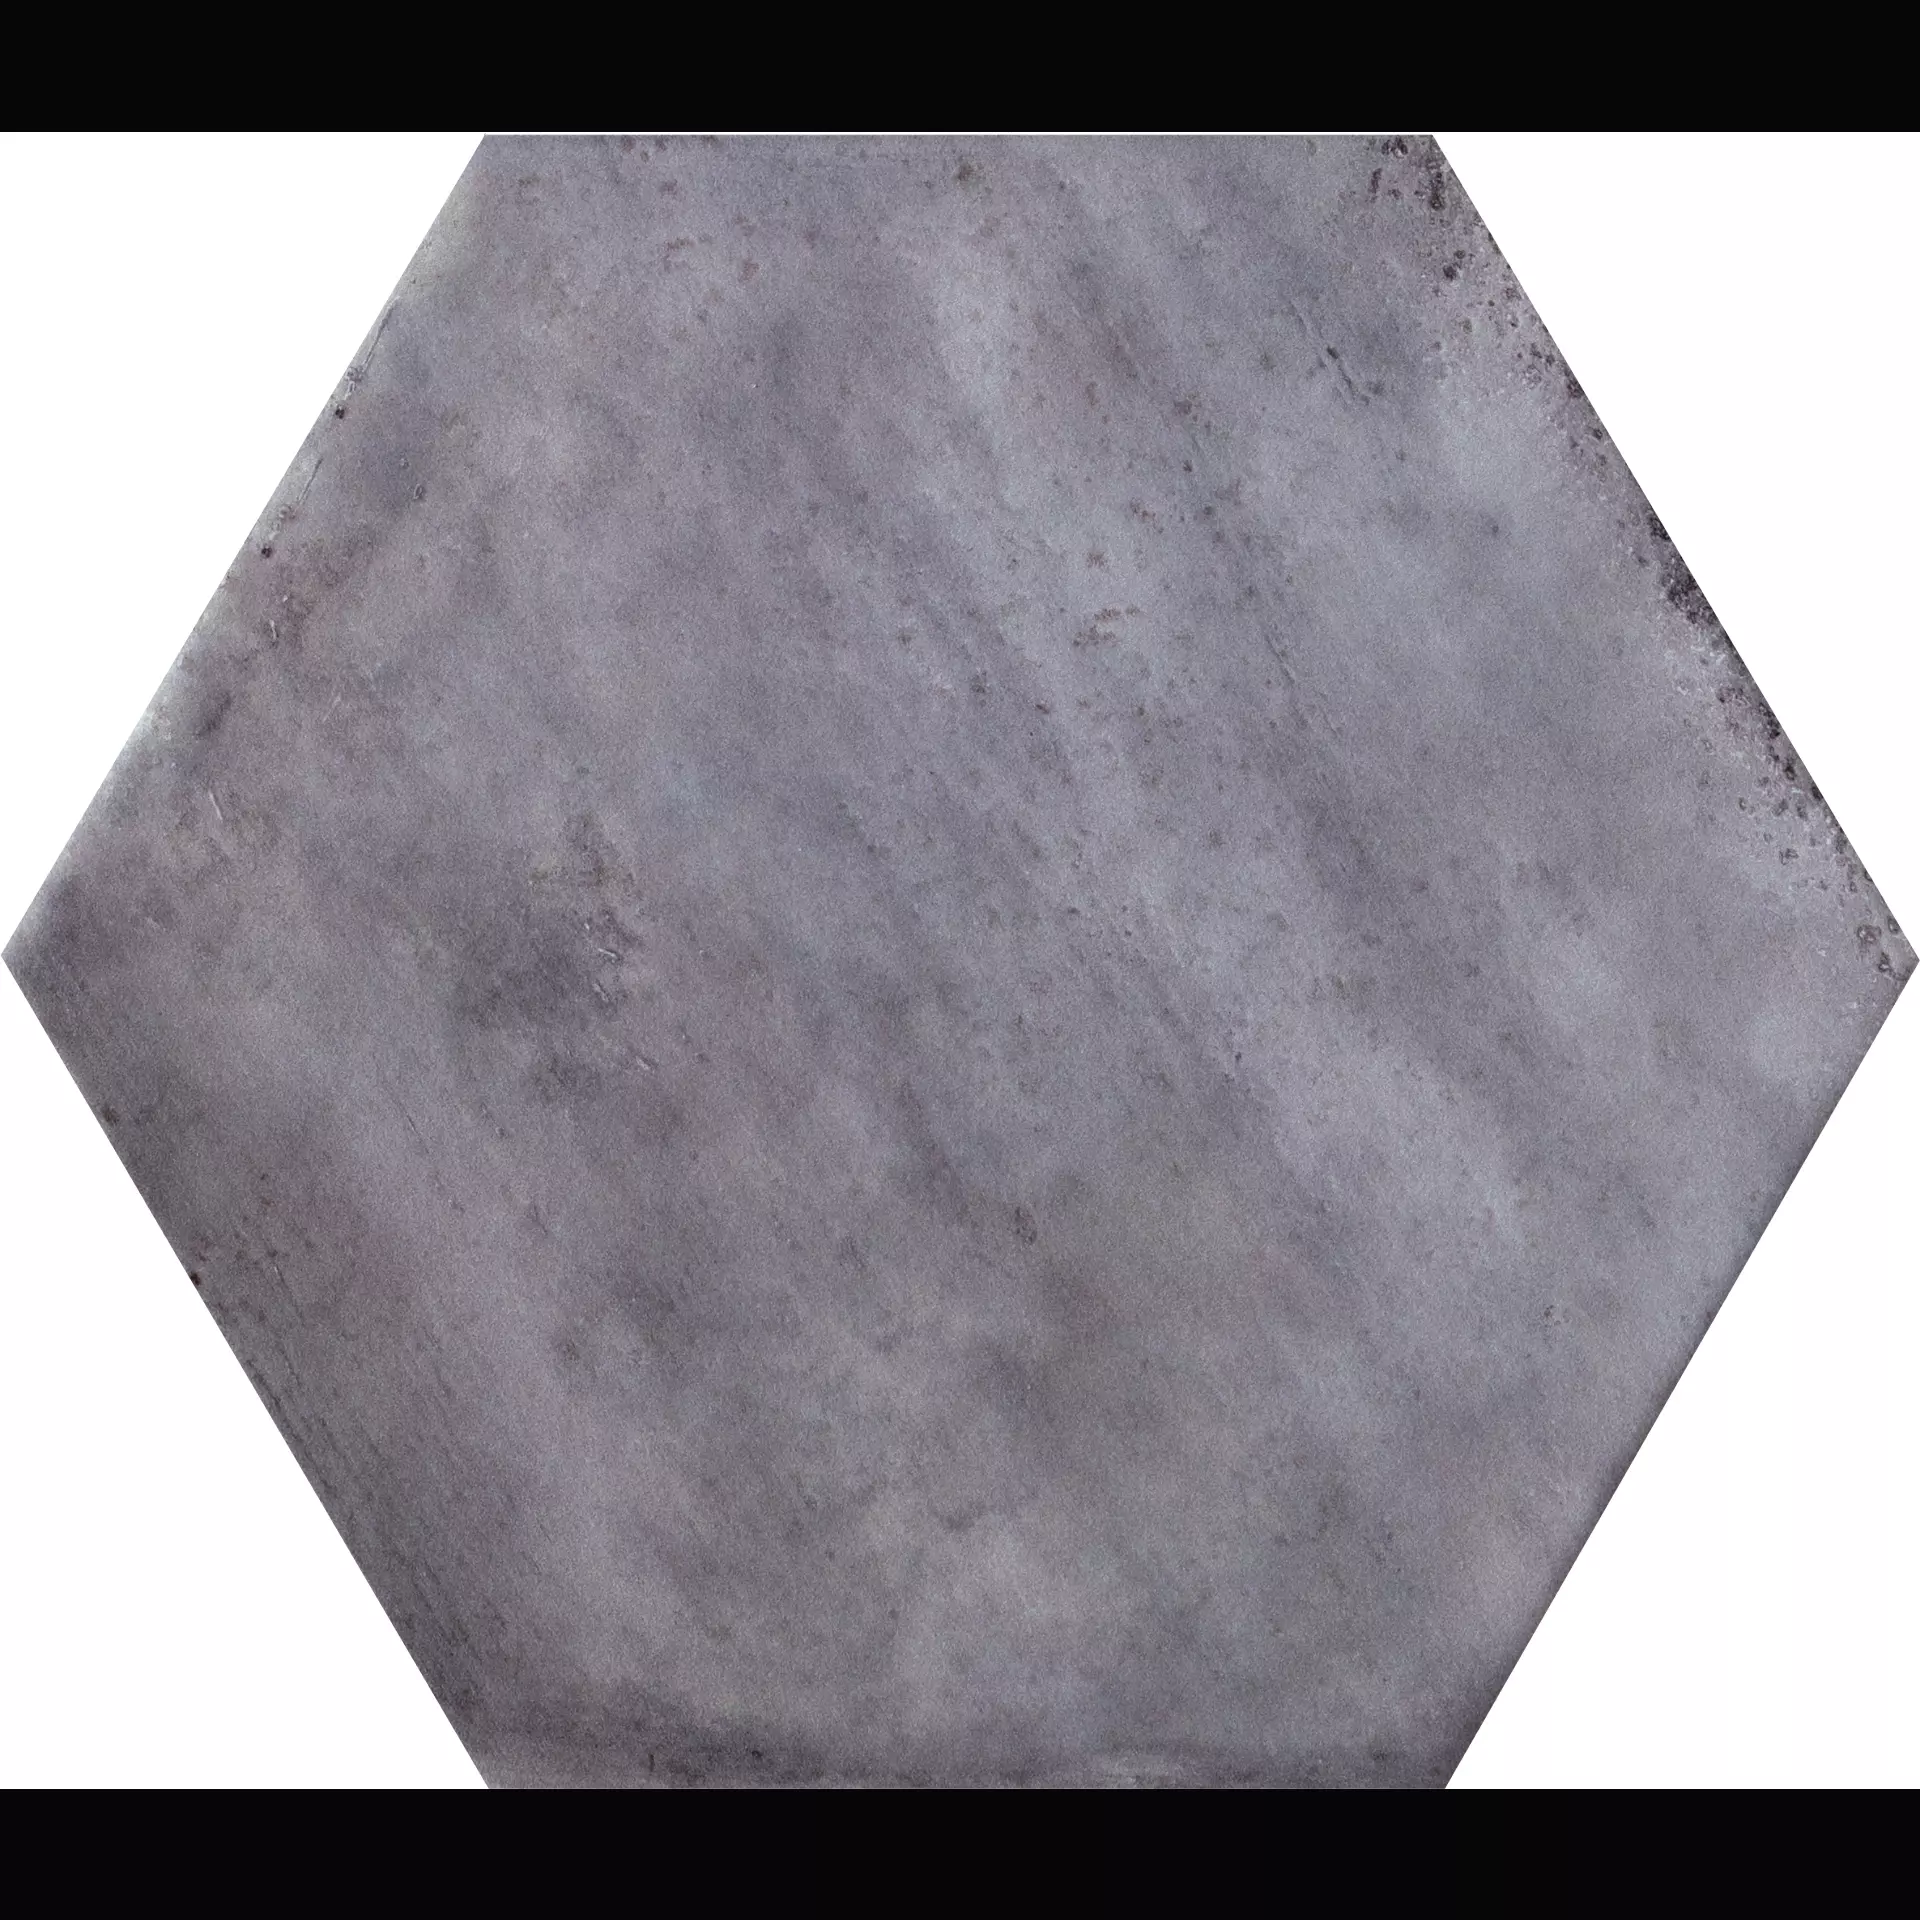 CIR Fuoritono Grigio Opaco Hexagon 1072709 24x27,7cm 10mm